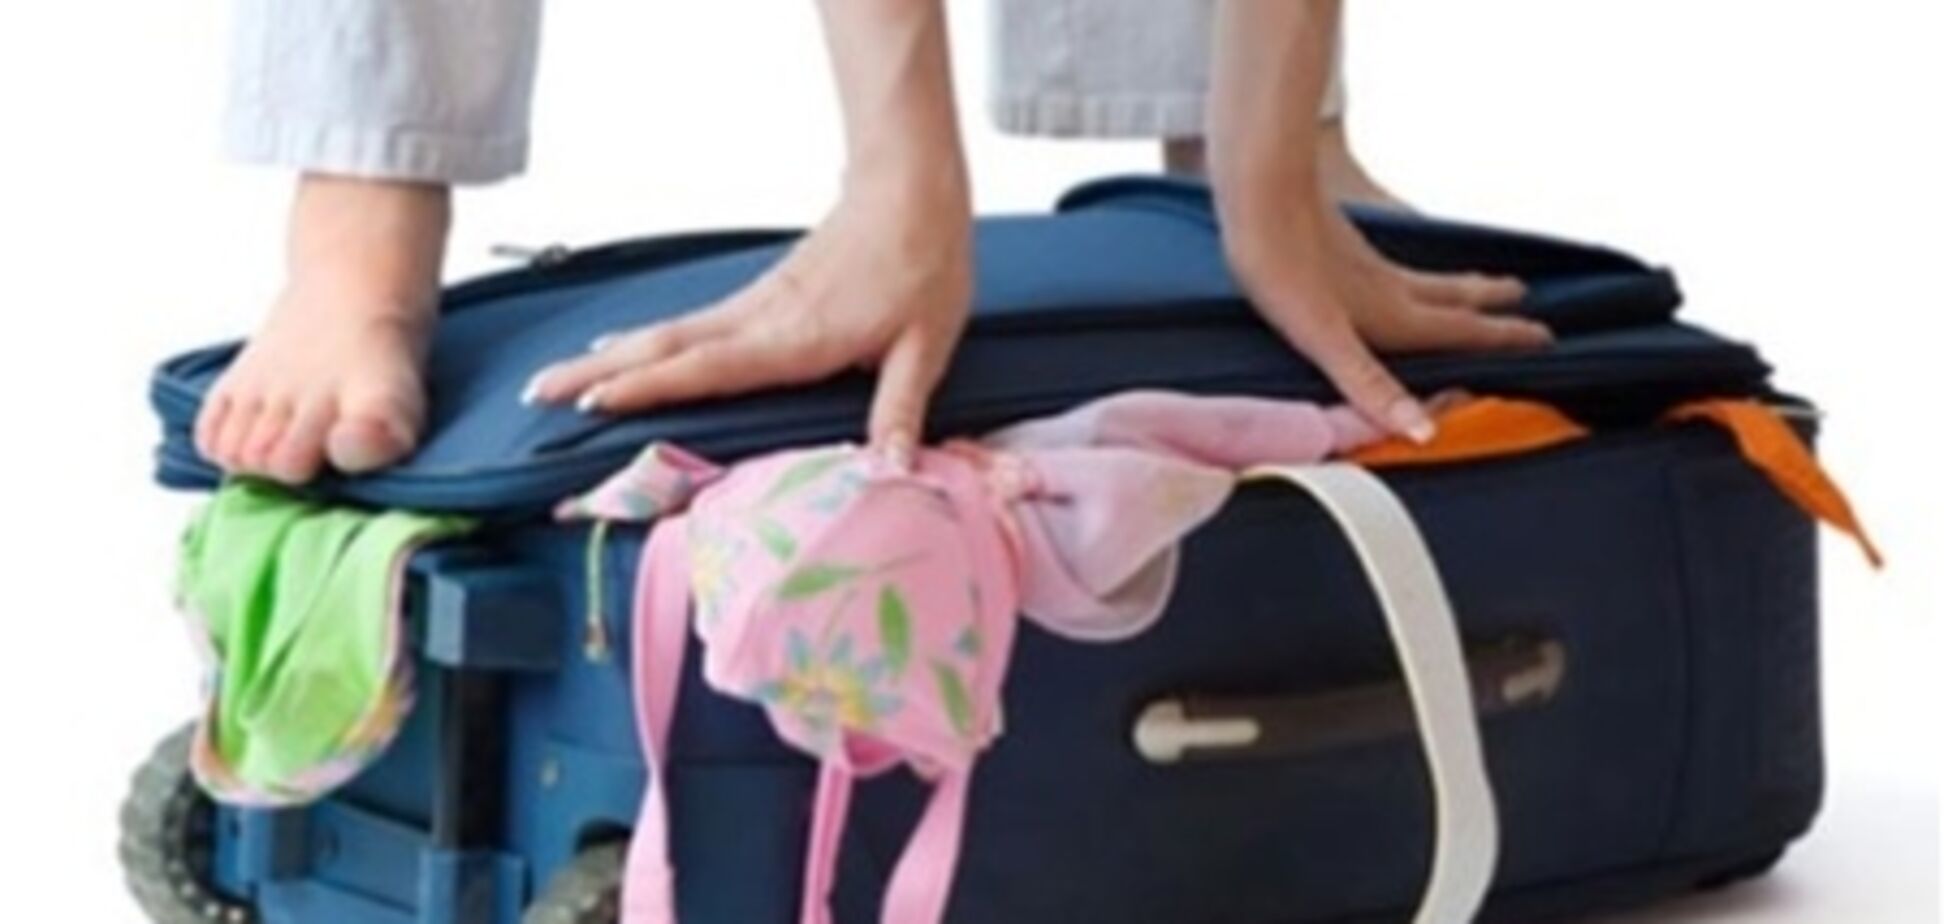 Украина обяжет иностранных лоу-костов перевозить багаж бесплатно